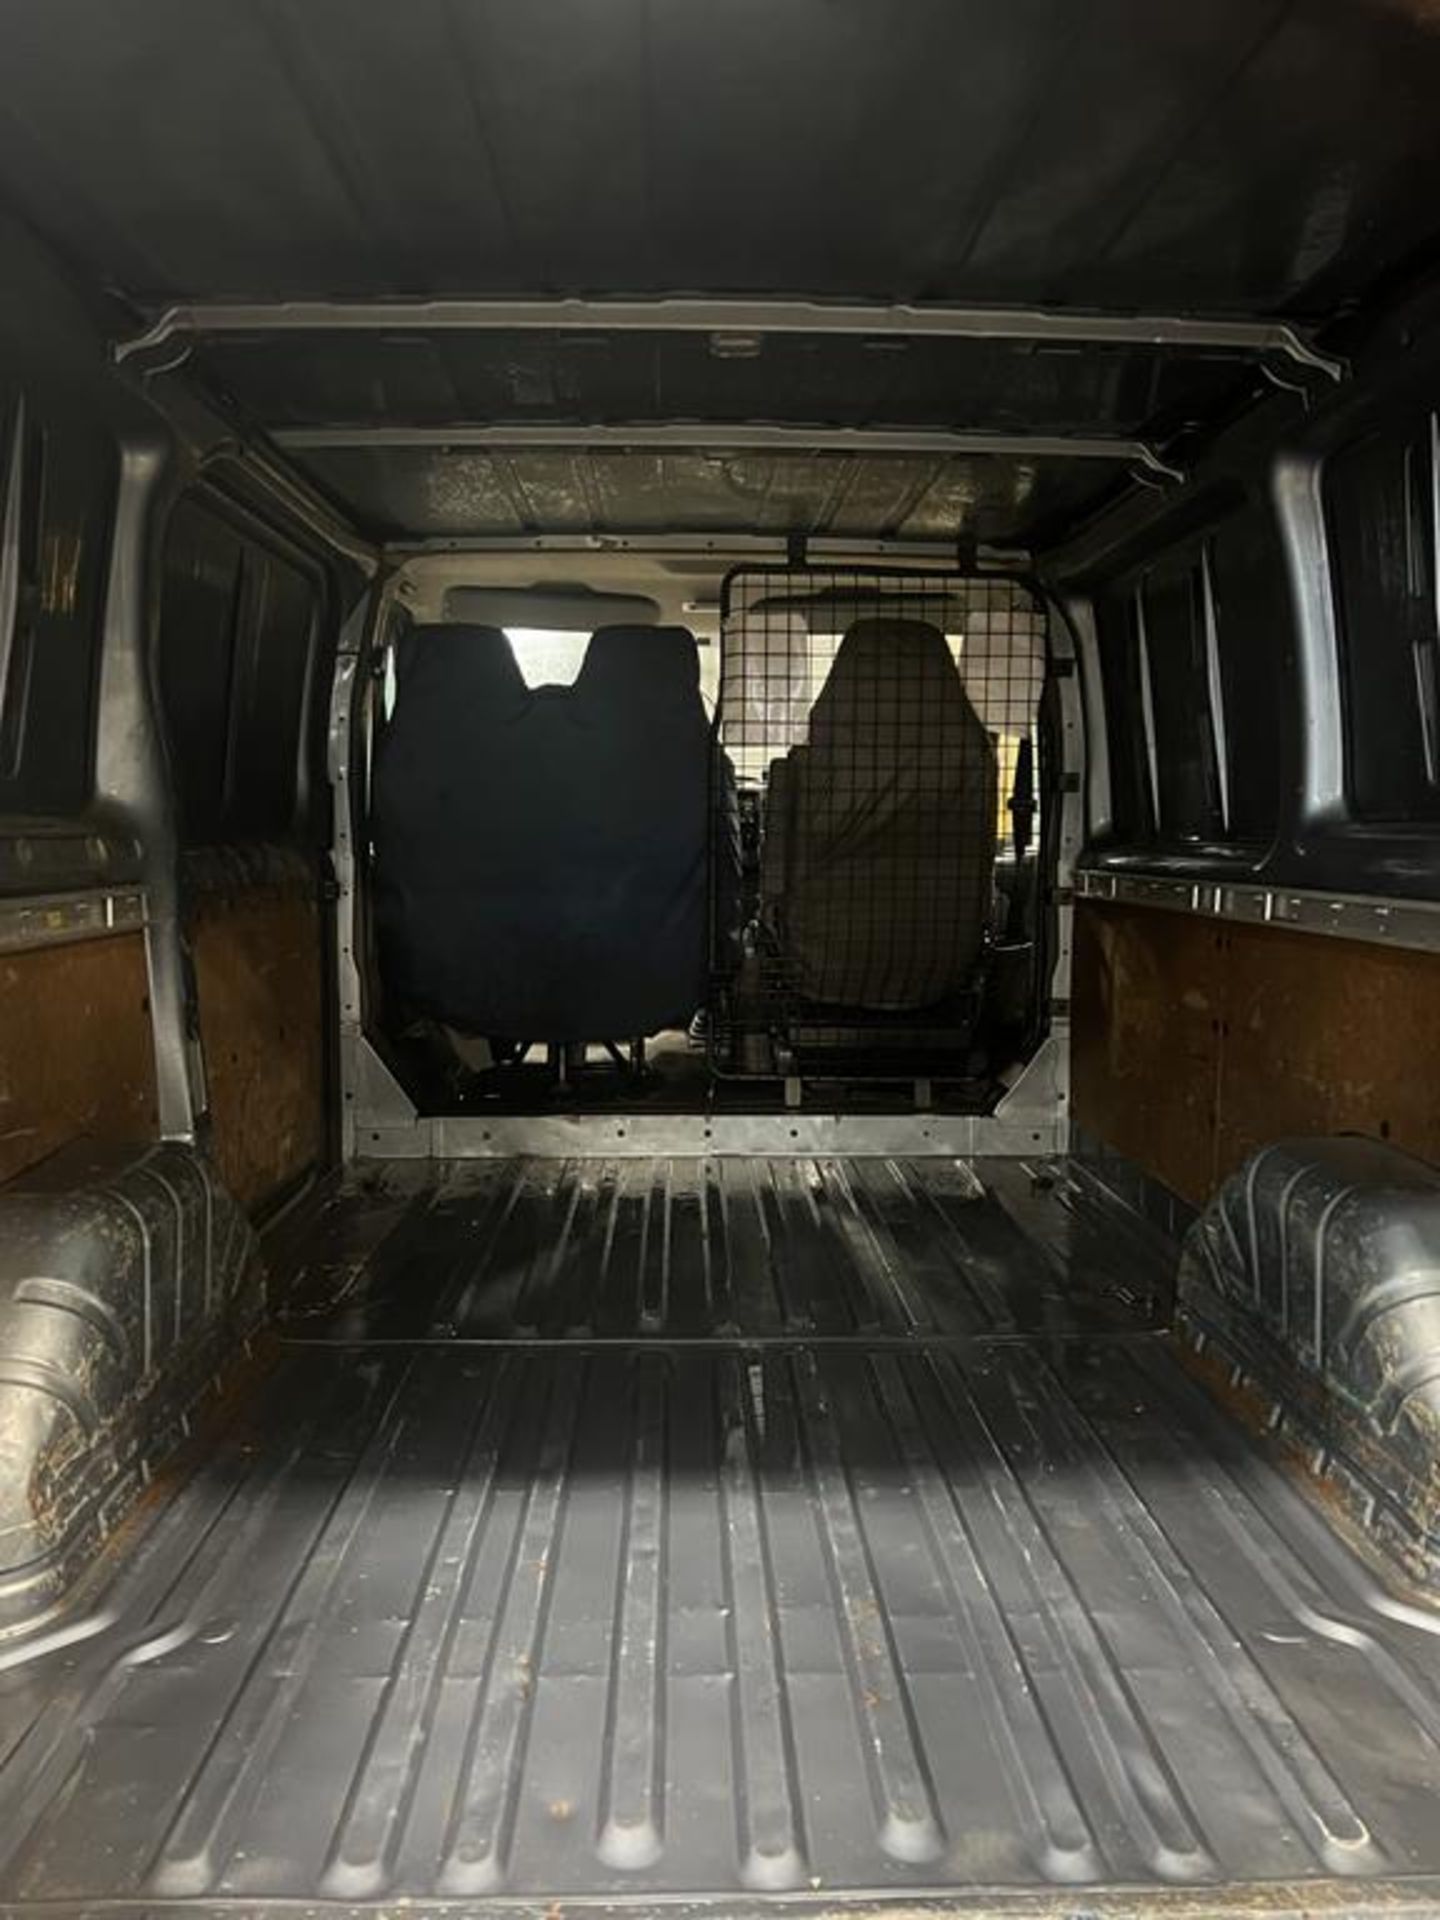 Ford Transit Van - Image 5 of 10